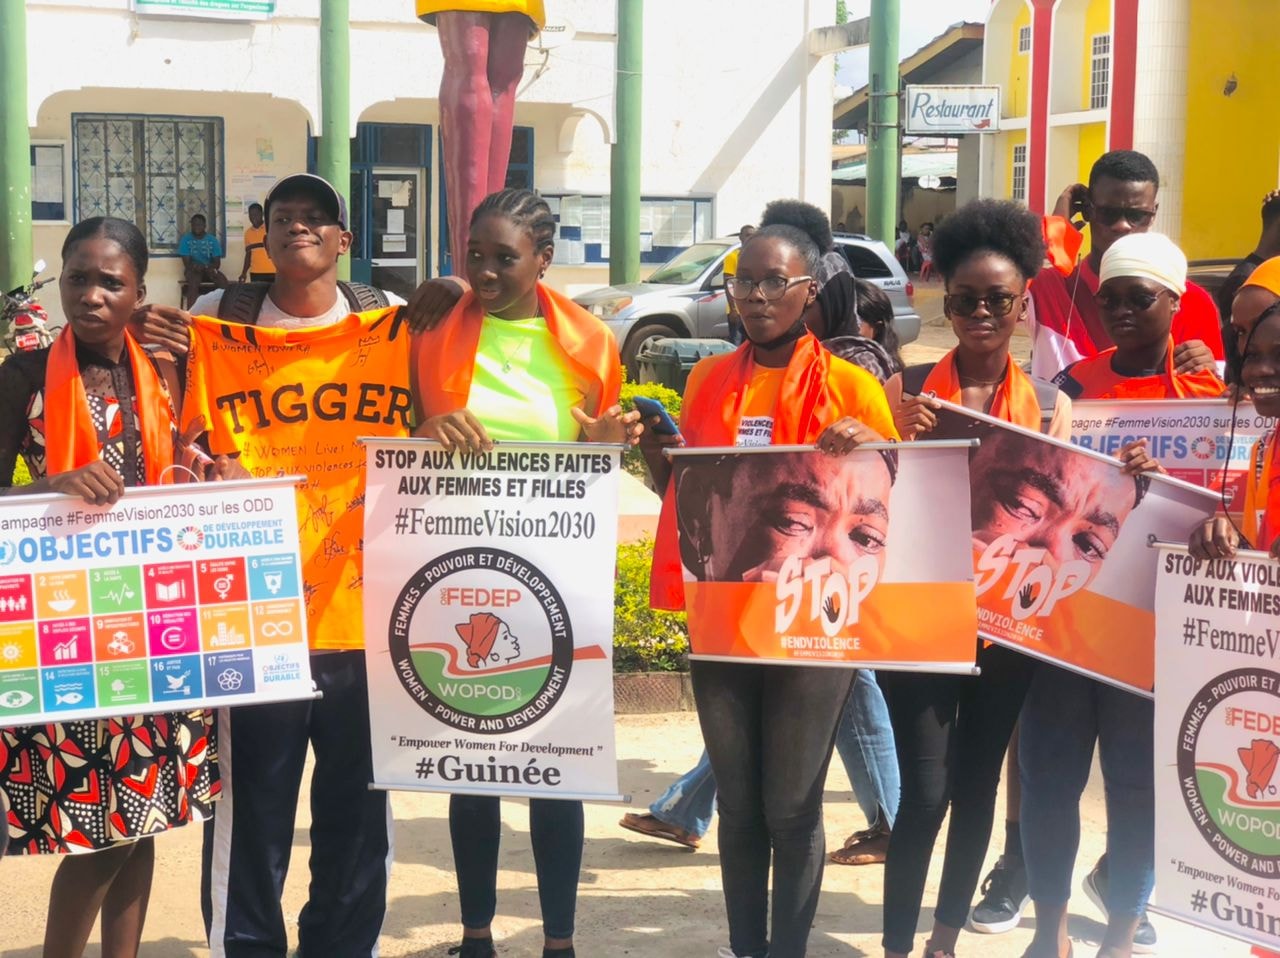 ﻿Recrudescence de viol en Guinée : L’ONG FEDEP déplore la pratique et invite les autorités à prendre des dispositions nécessaires